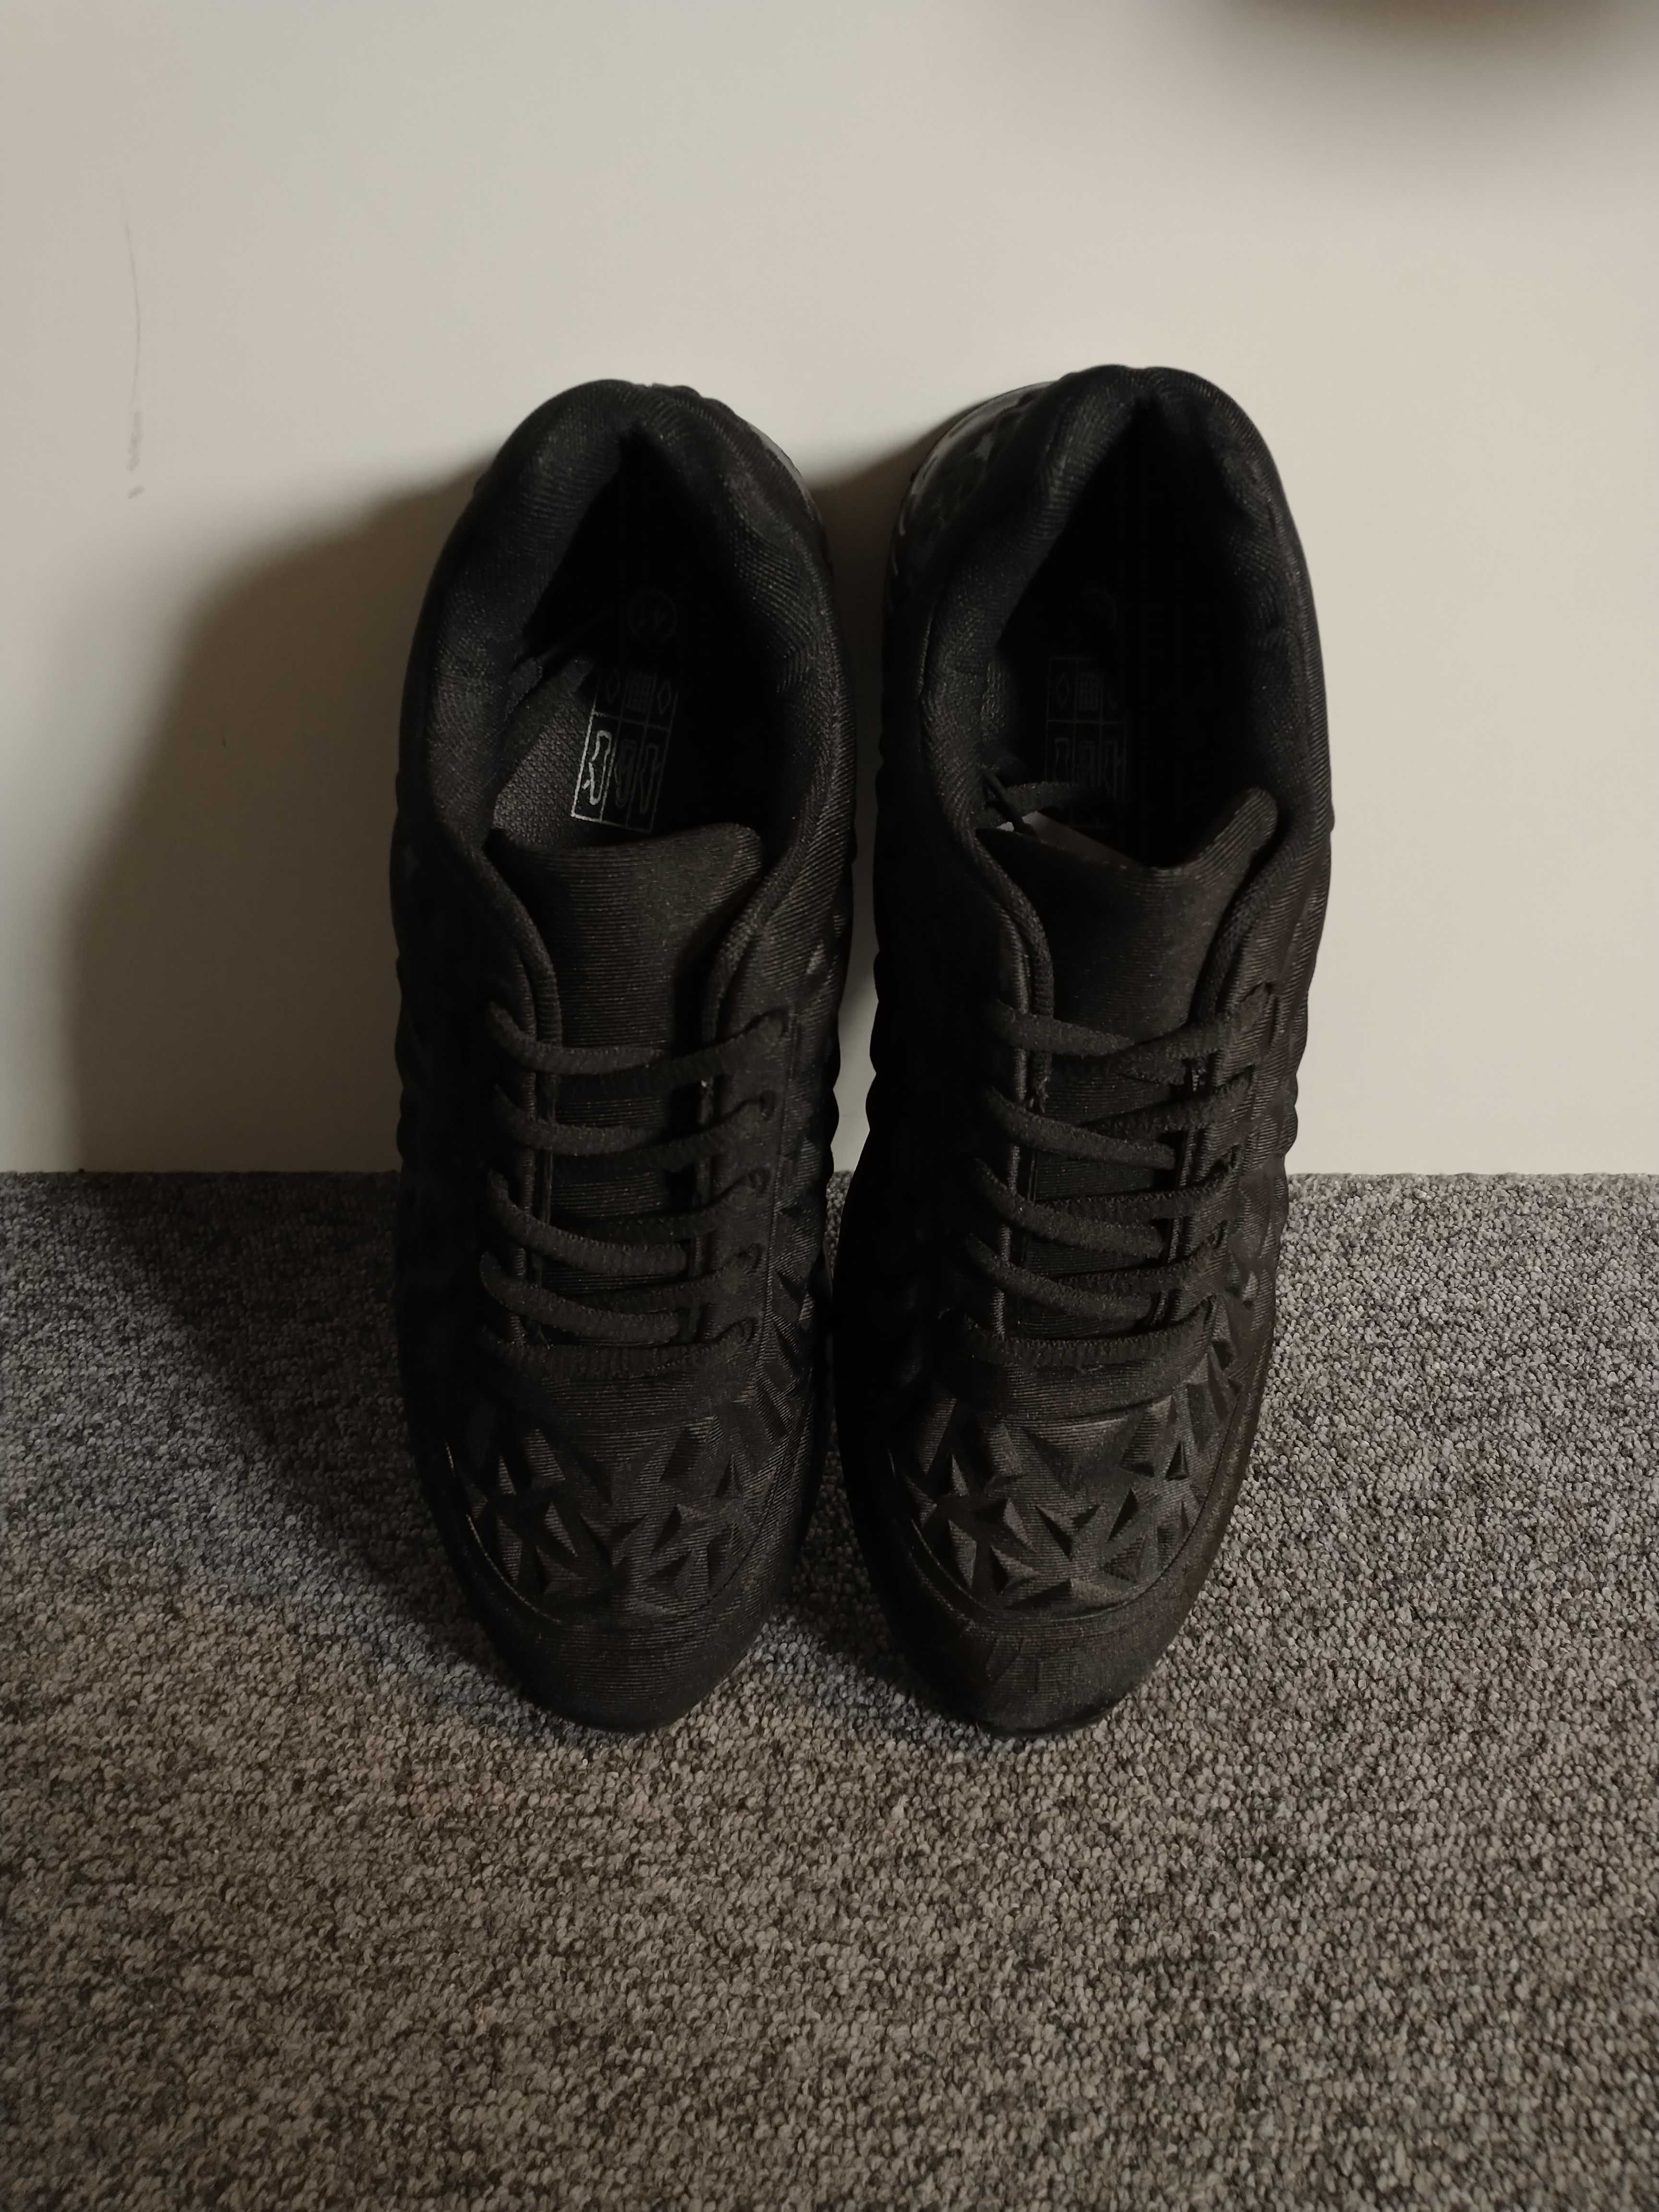 R. 41 buty sportowe męskie młodzieżowe czarne lekkie adidasy 3D nowe